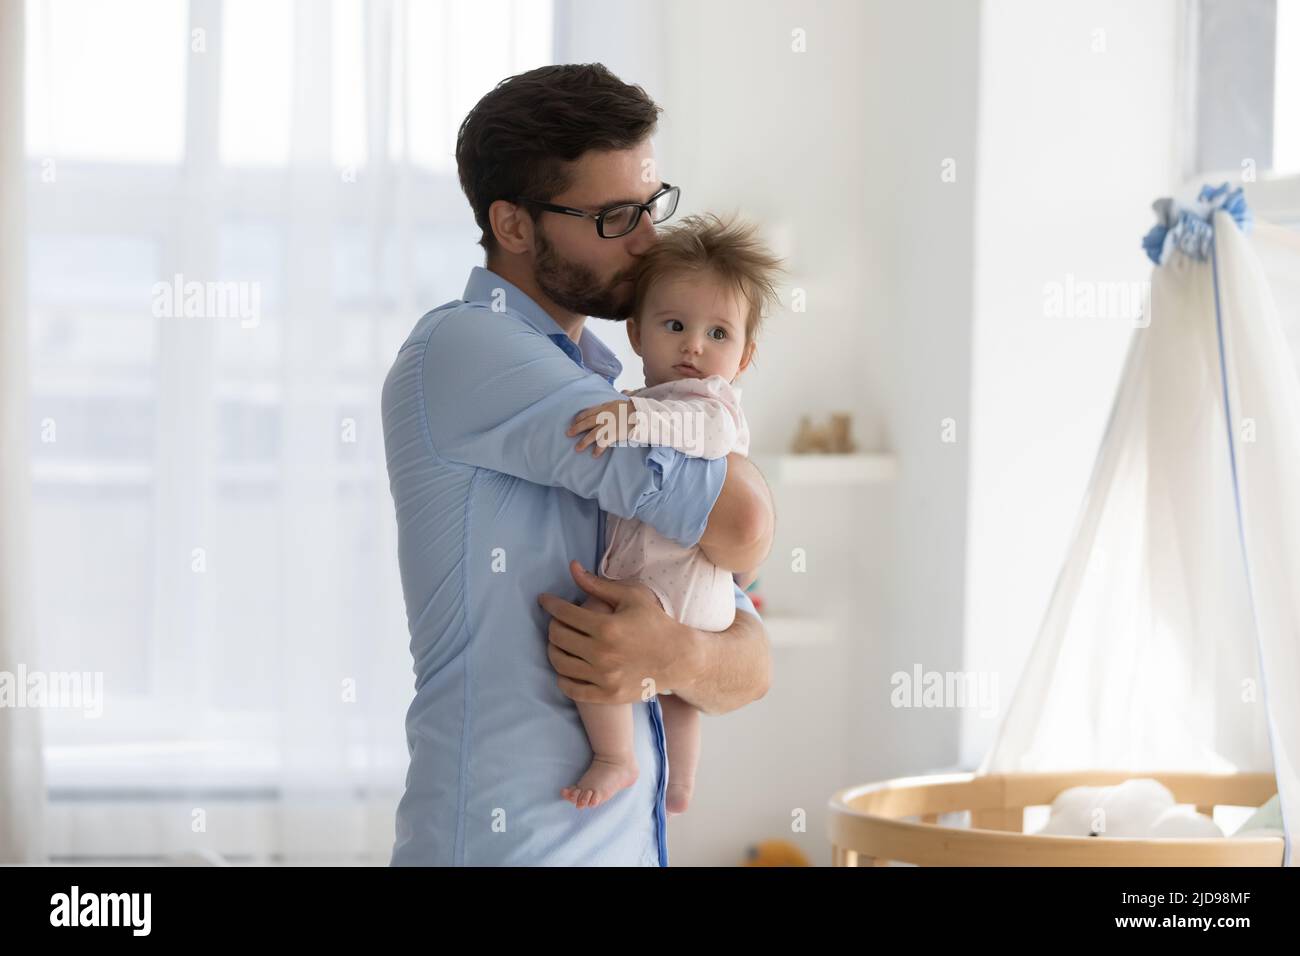 Vita küsst das Baby, das in der Nähe einer modernen Krippe in einer gemütlichen Kinderstube steht Stockfoto